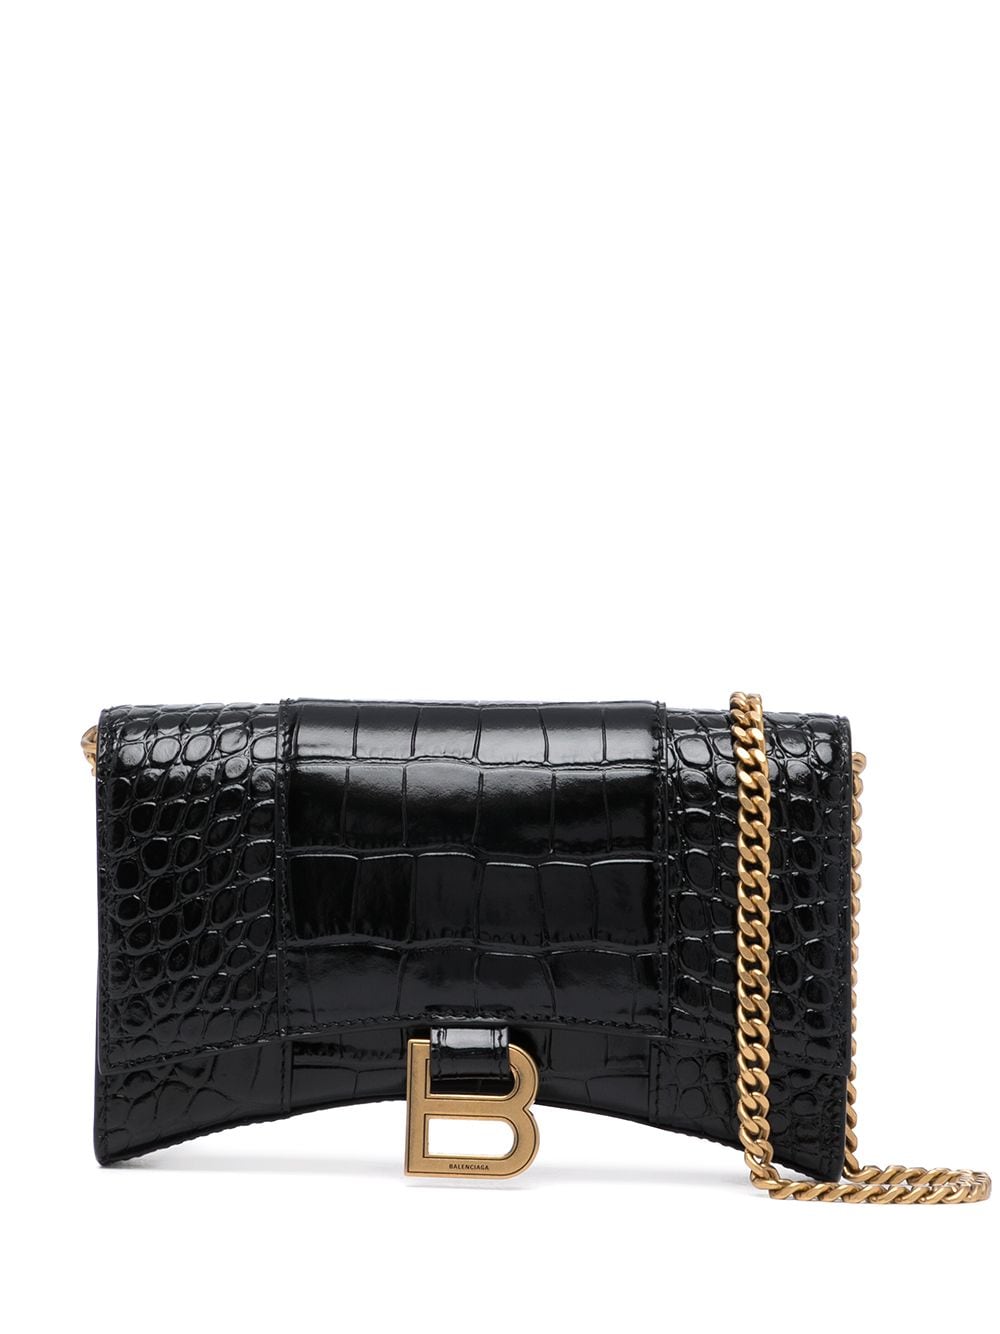 時尚女性專用 黑色鱷魚紋小手提包 附金色鏈帶